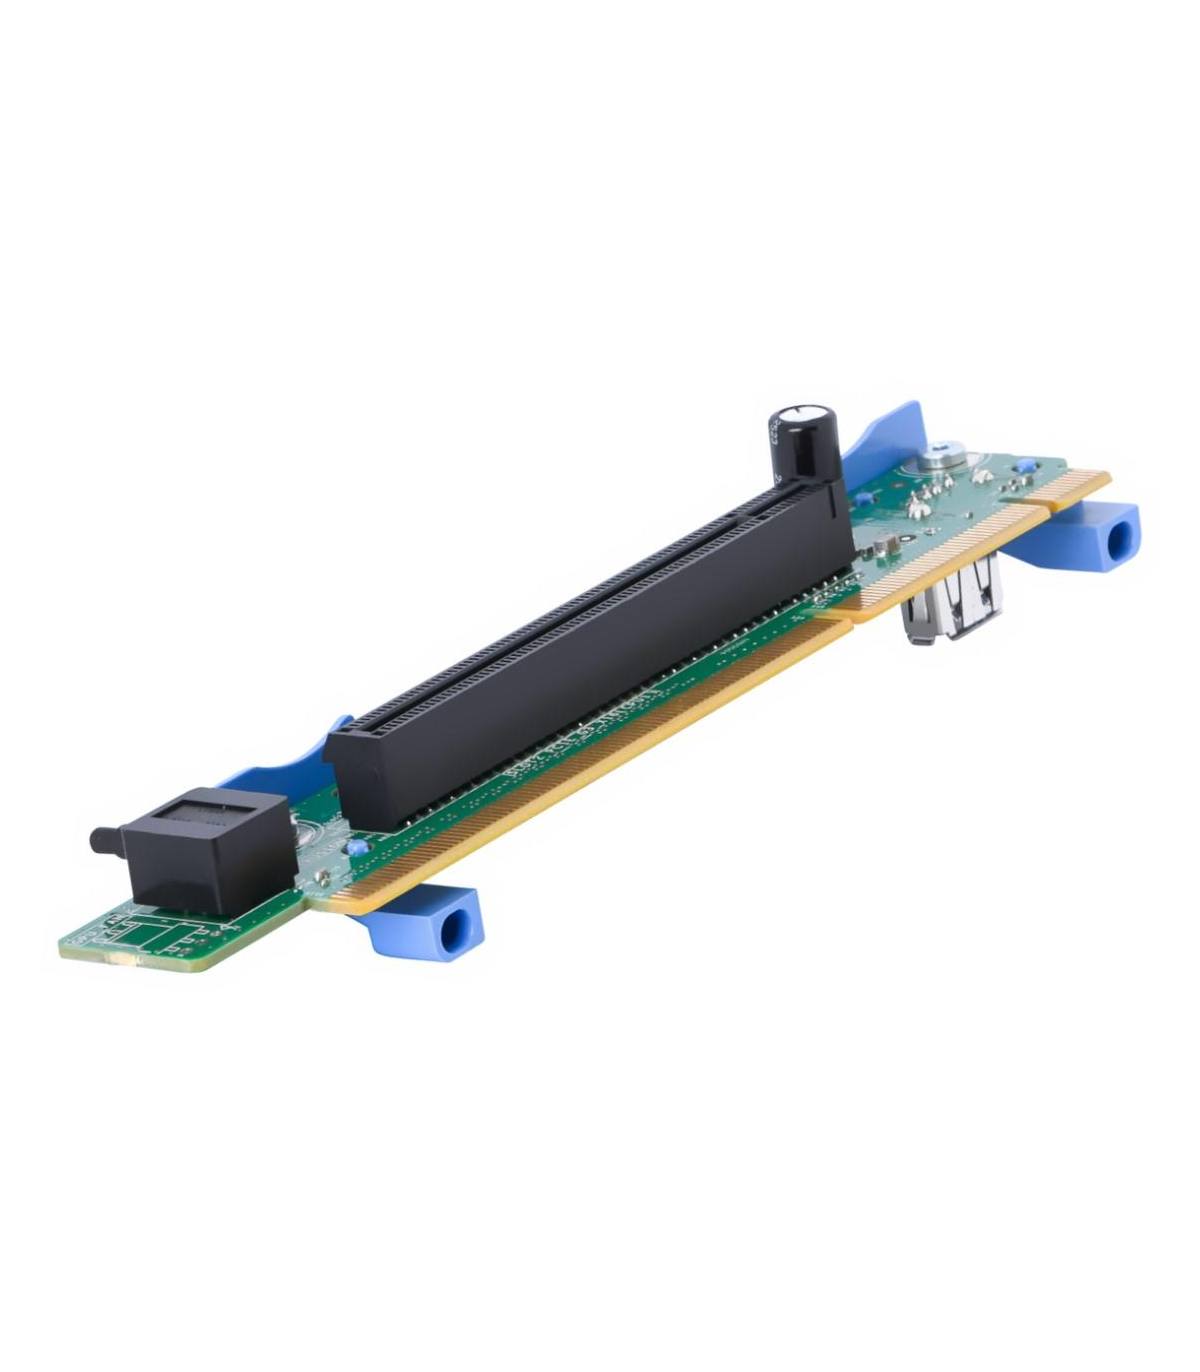 RISER 1 CARD DELL R320 R420 PCI-E PCIE X16 07KMJ7